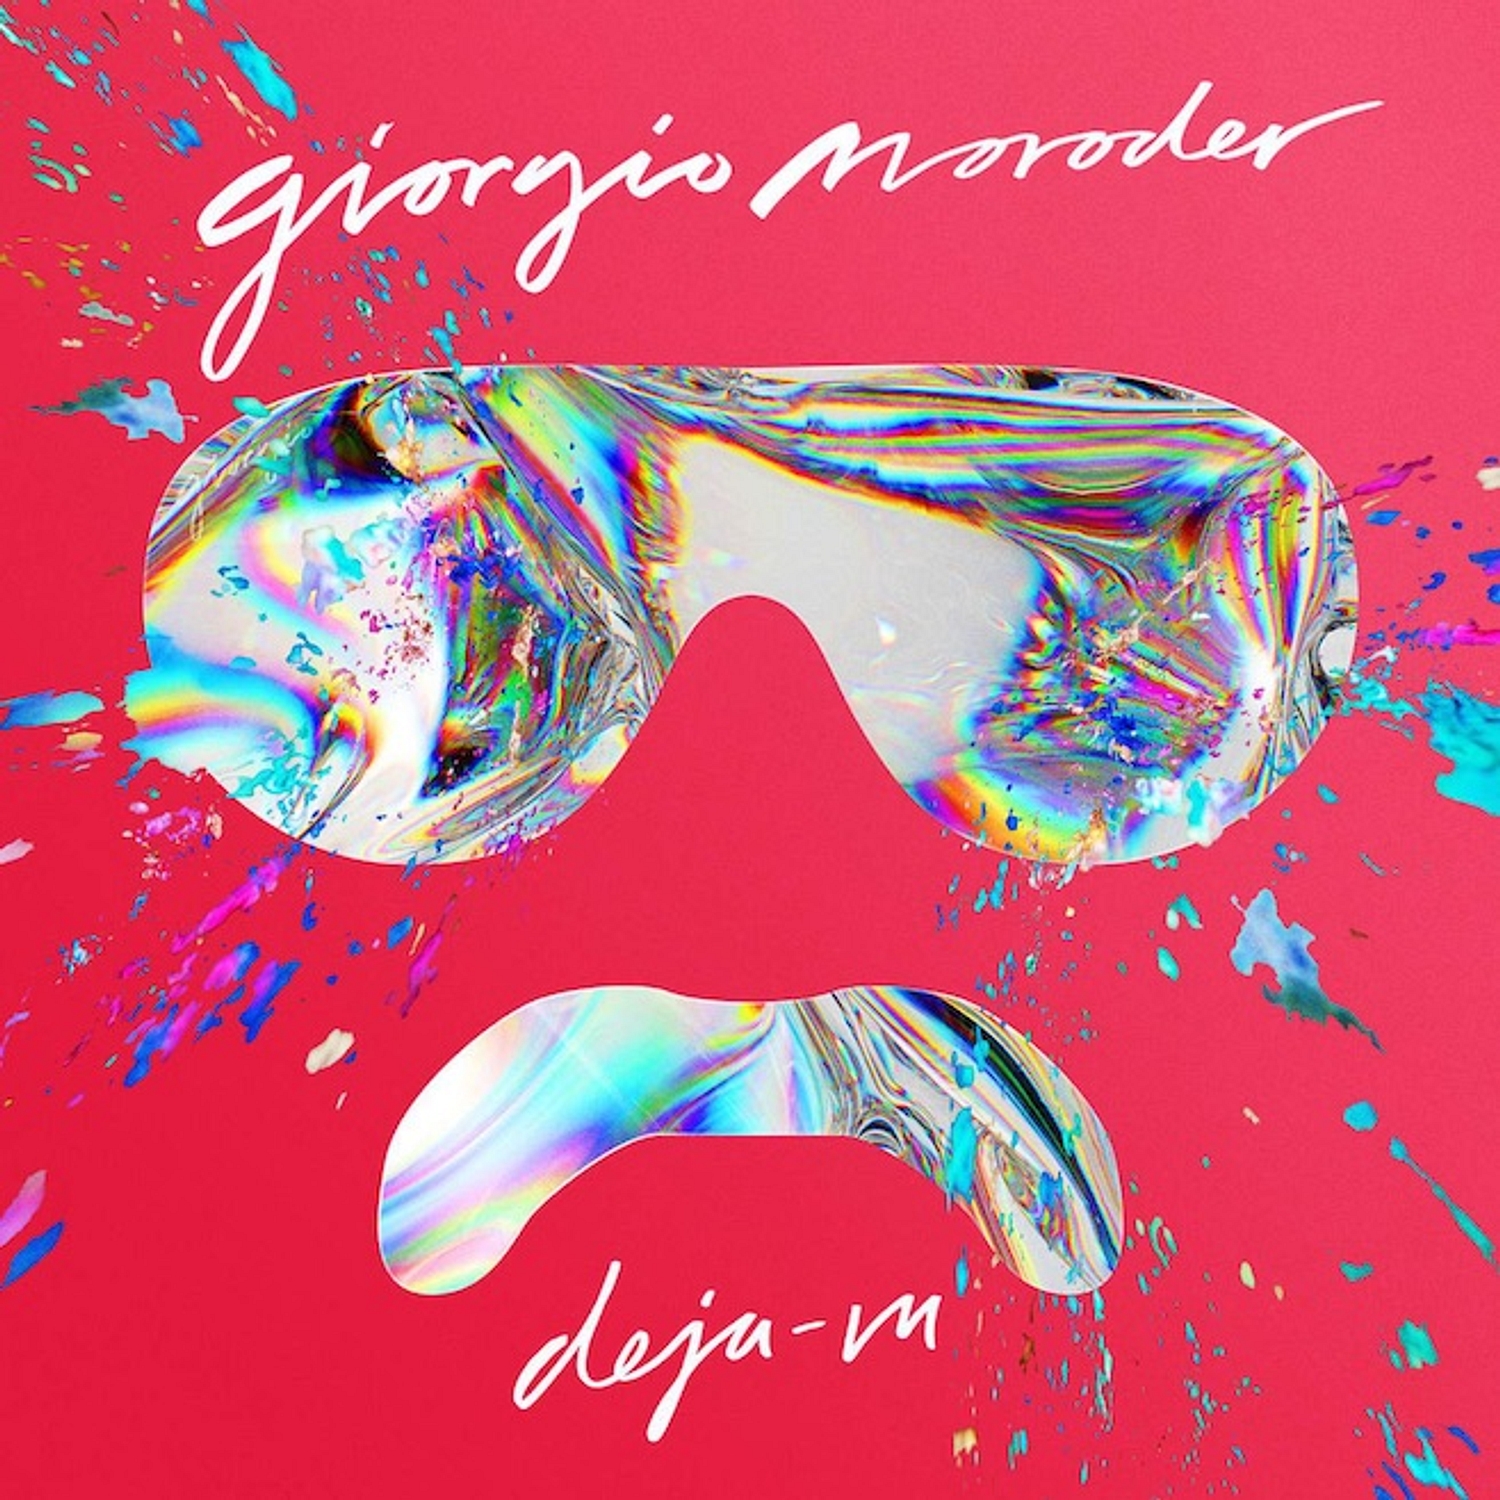 Giorgio Moroder details ‘Déjà Vu’, his first album in 30 years